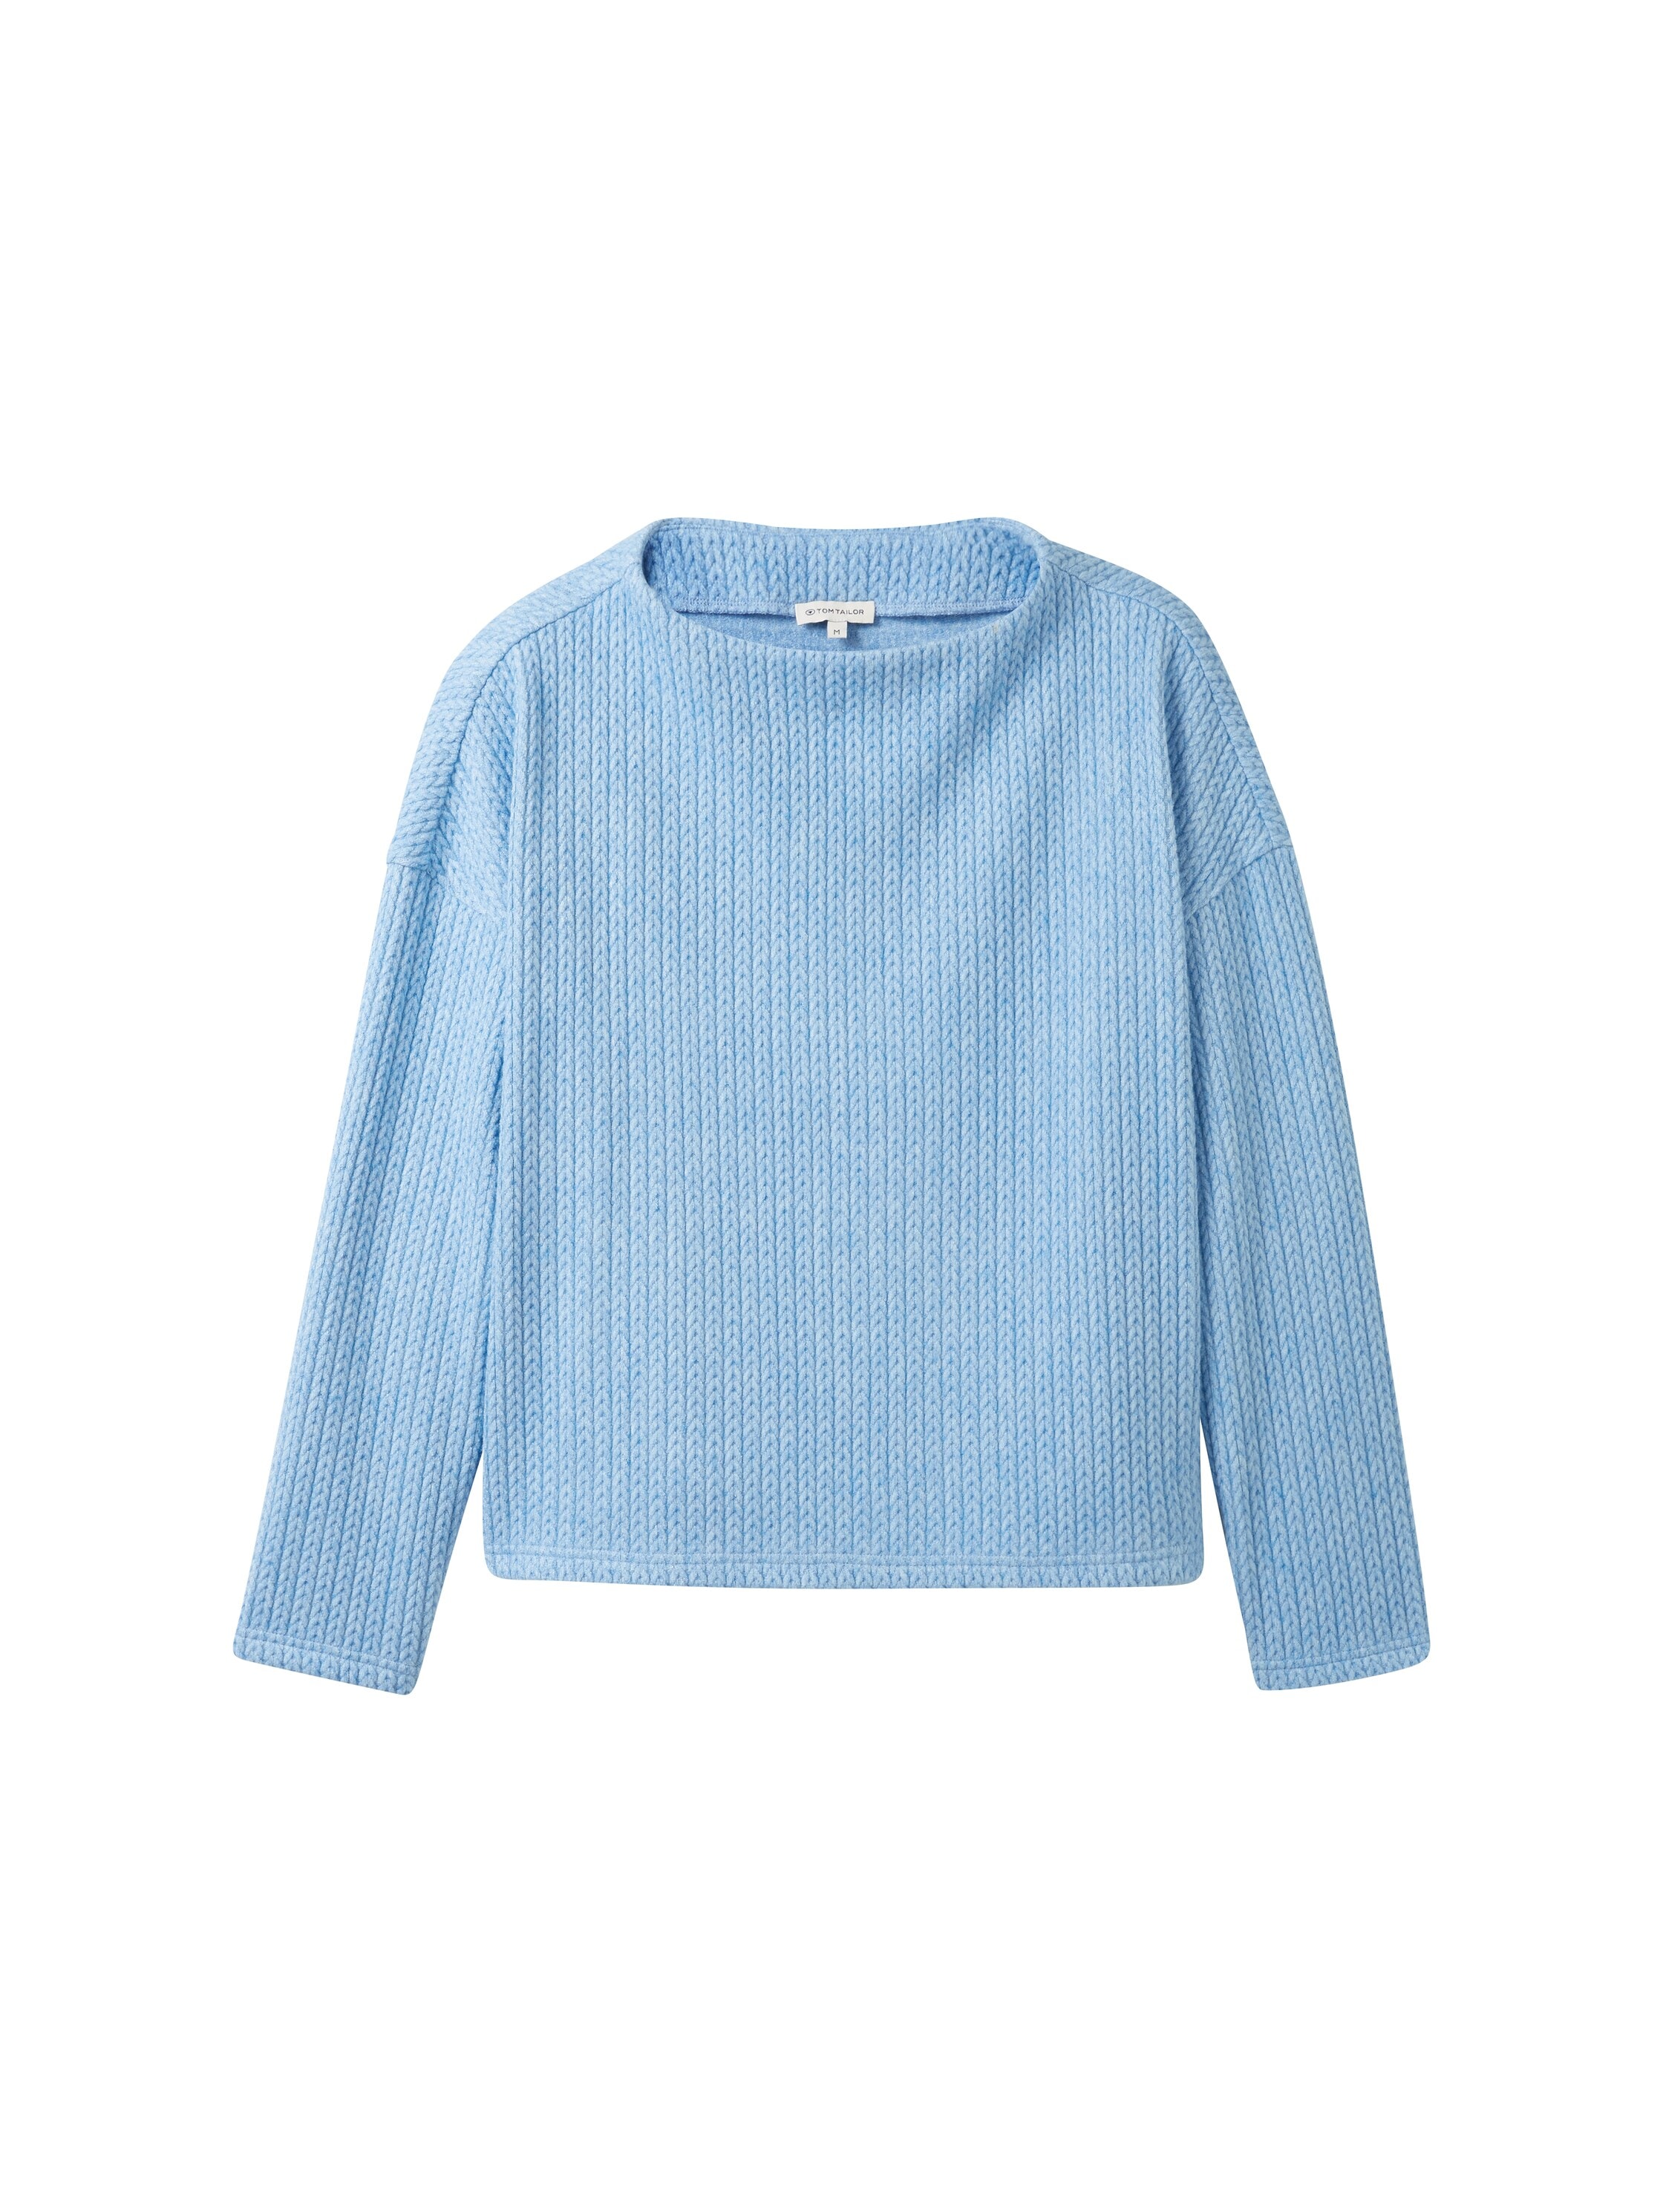 TOM TAILOR Sweatshirt, mit Drop-Shoulder Naht online kaufen | BAUR